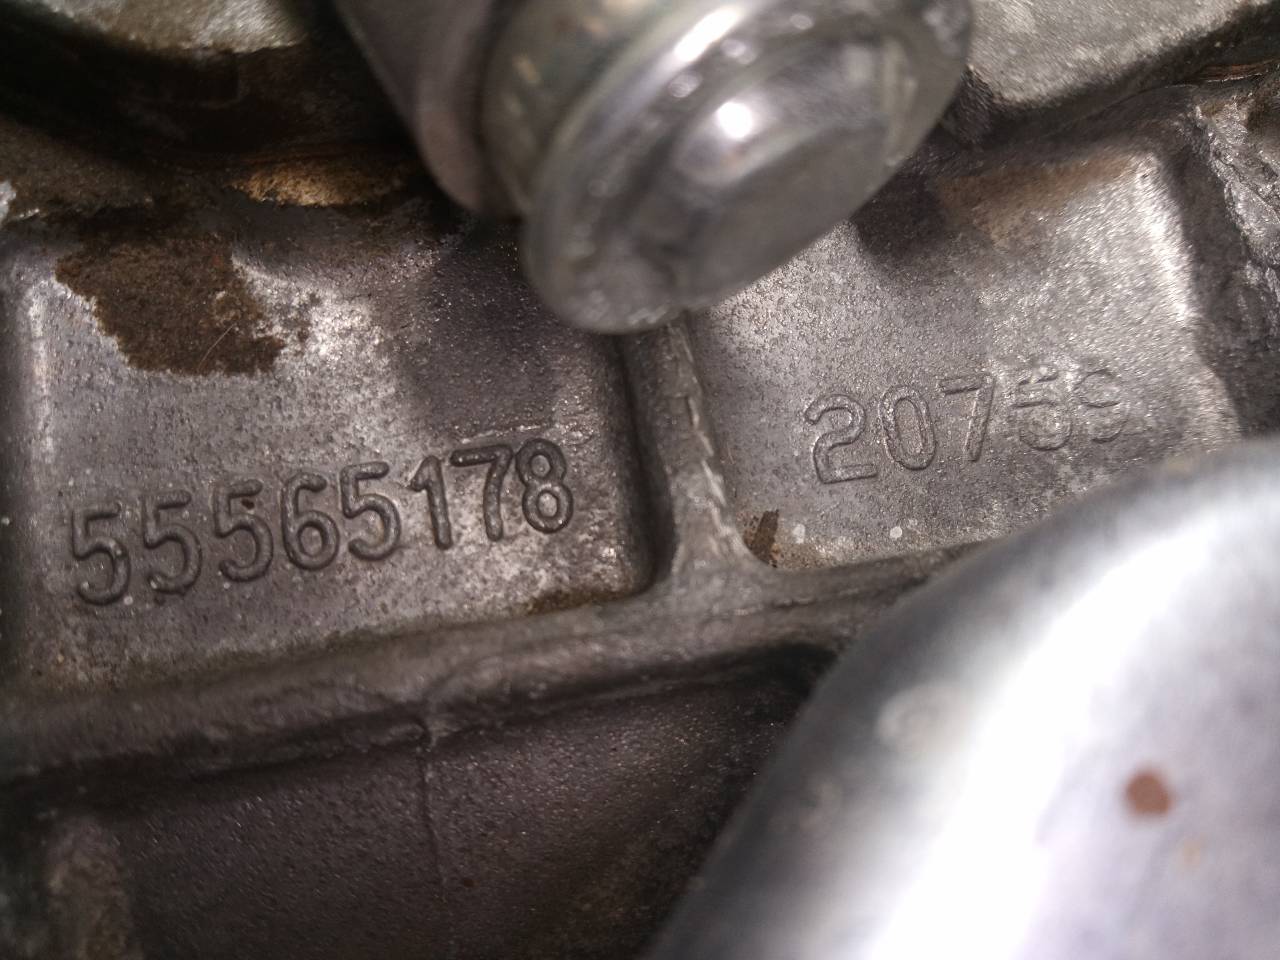 OPEL Corsa D (2006-2020) Gearbox 55565178, 20759, M1-A3-152 24069161